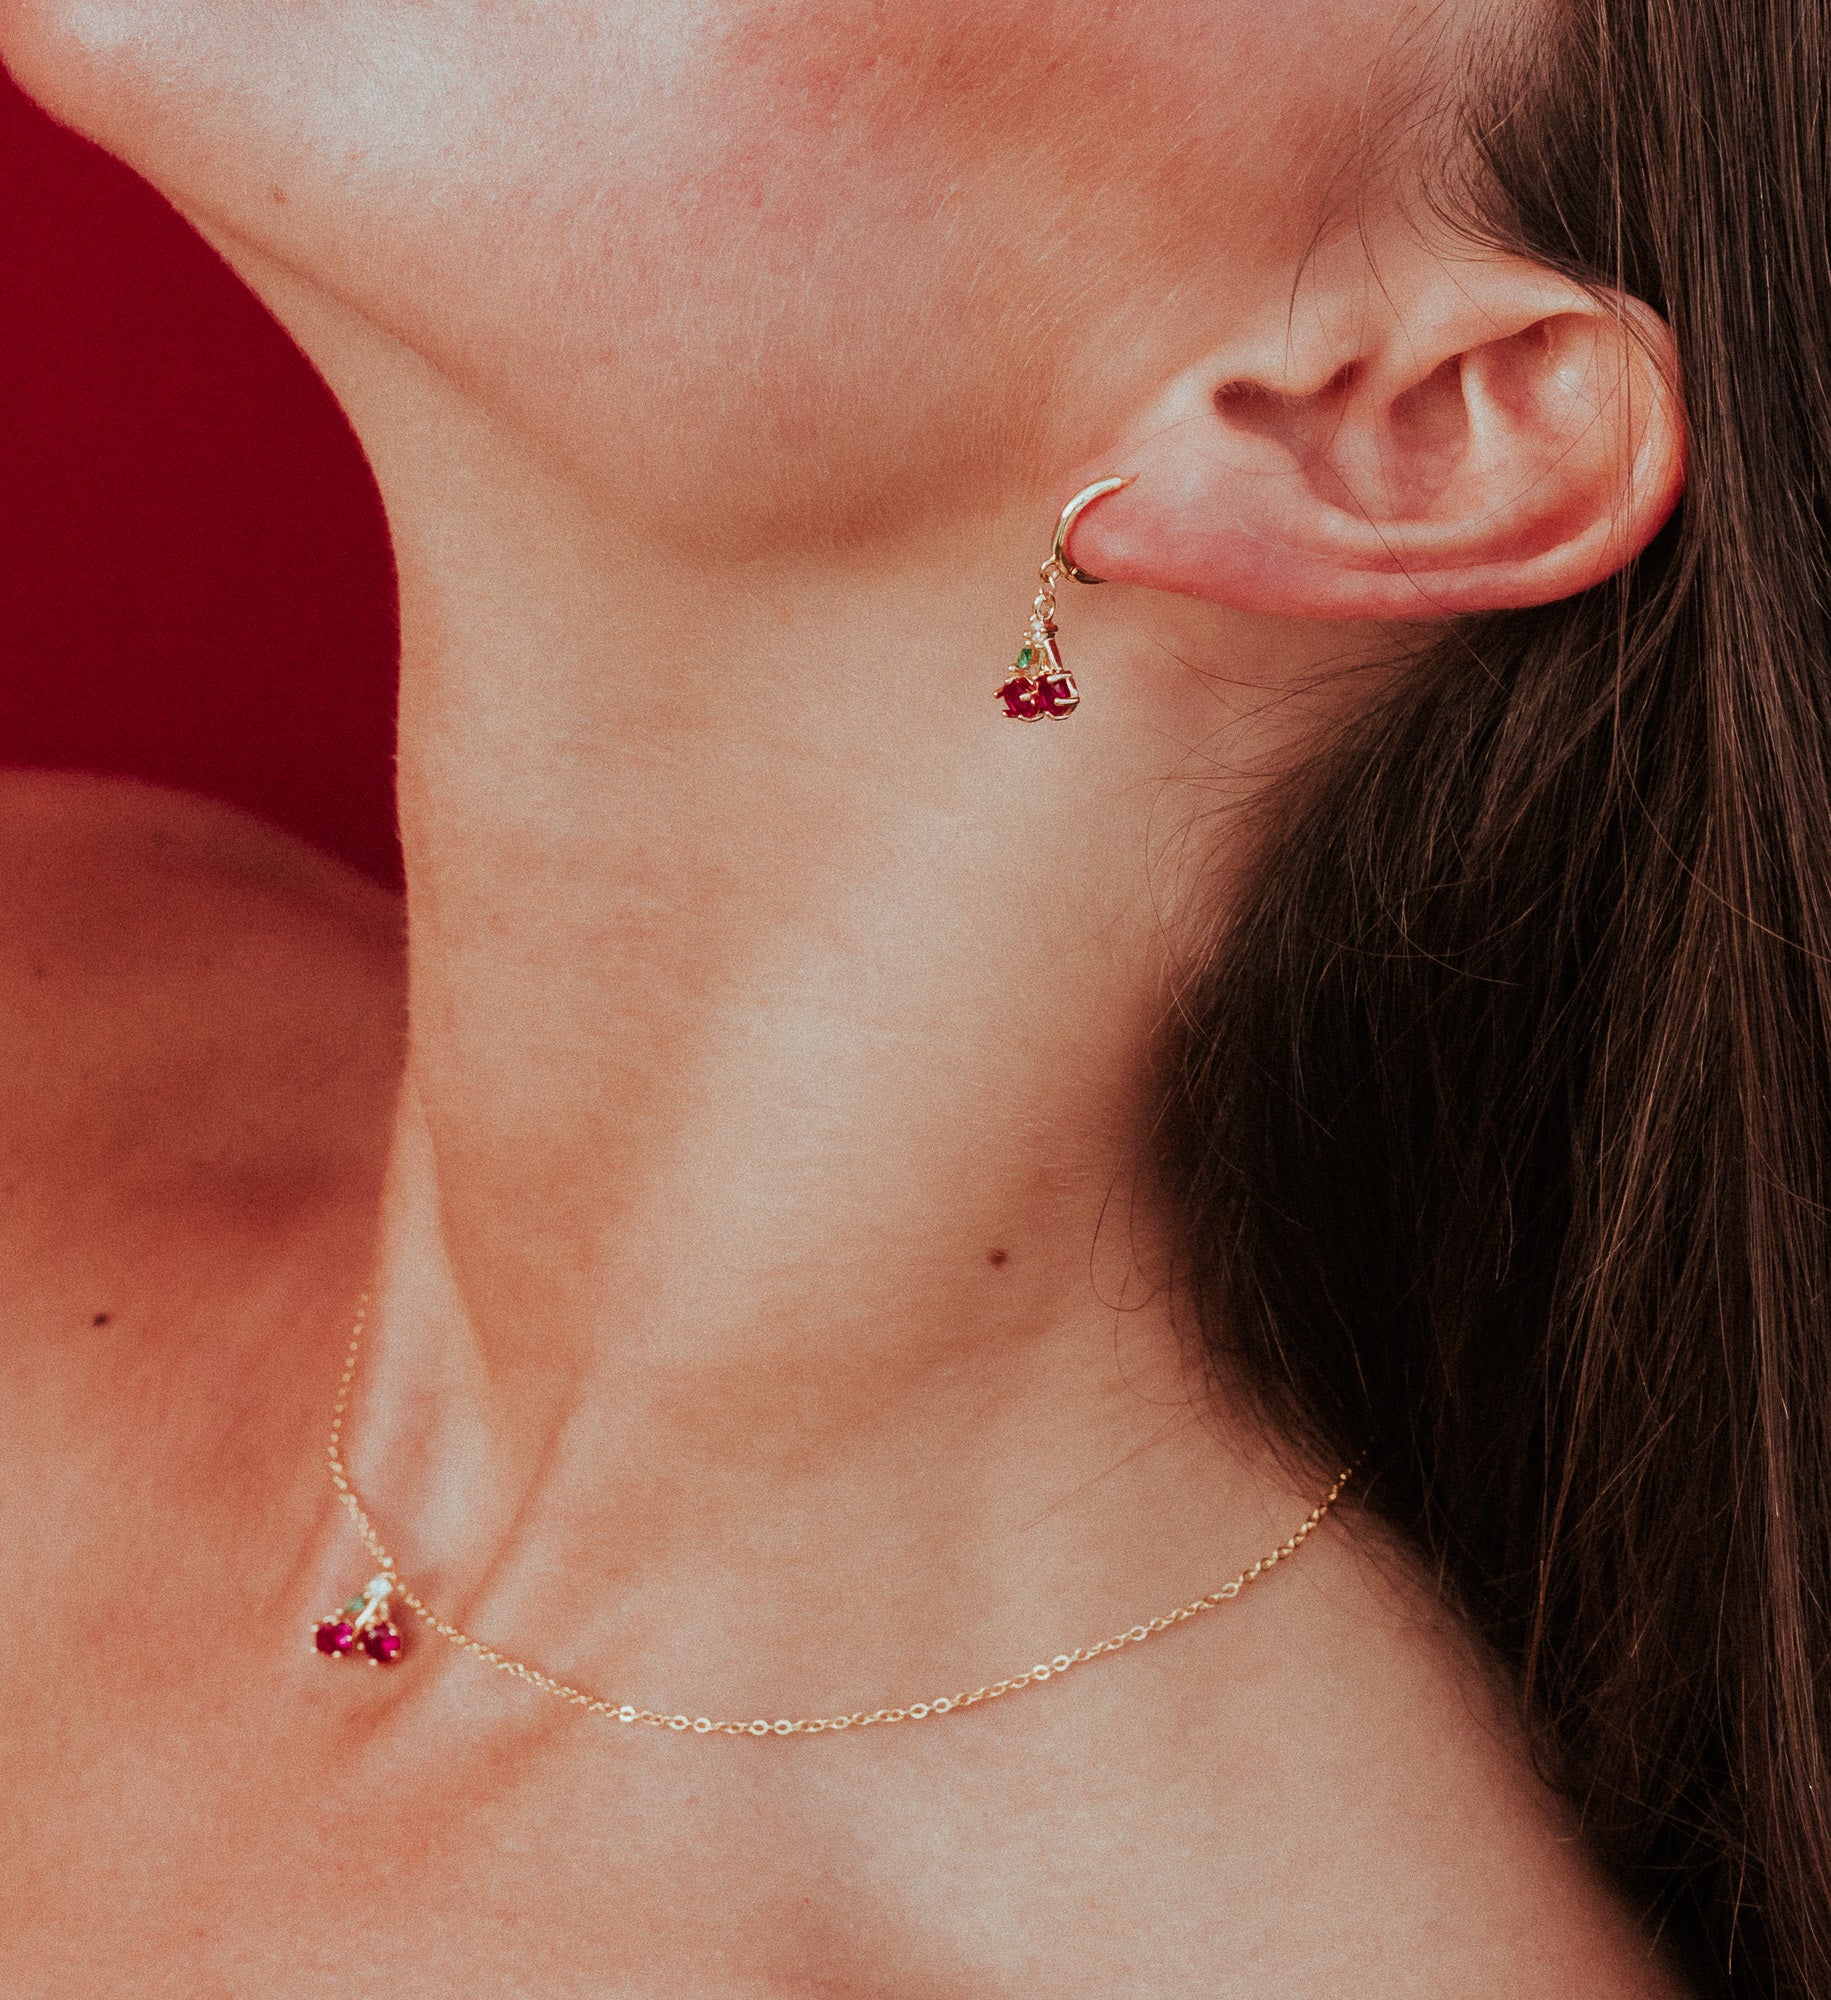 Cherry pendant earring